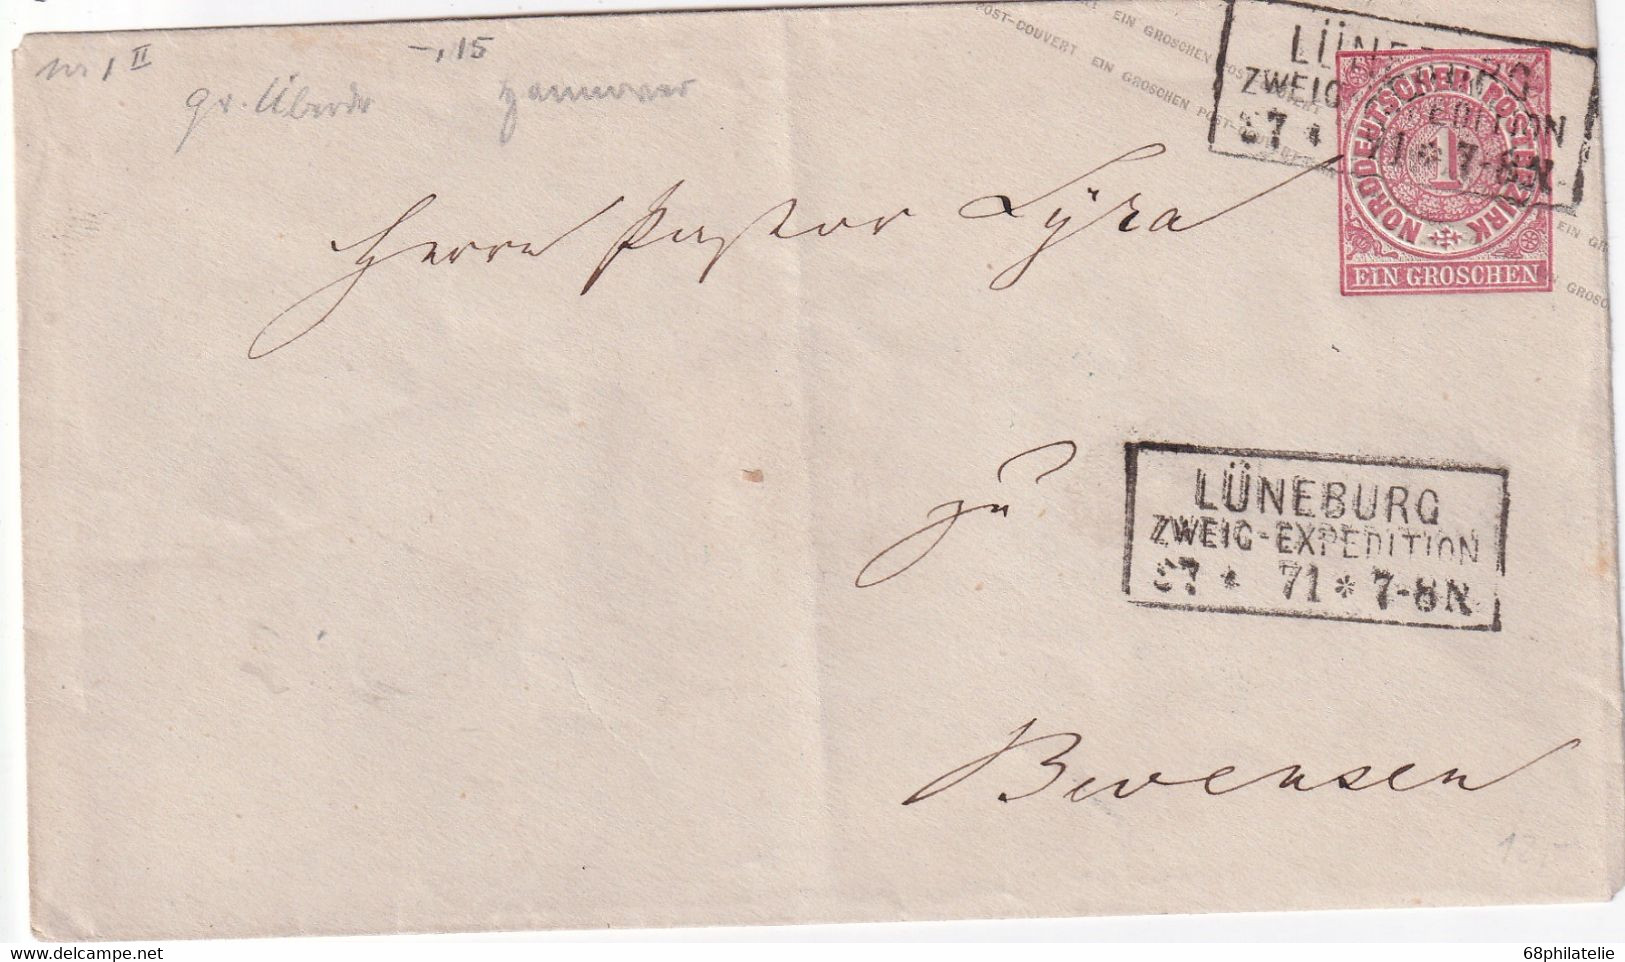 NORDDEUTSCHER BUND  1871    ENTIER POSTAL/GANZSACHE/POSTAL STATIONERY LETTRE DE LÜNEBURG - Postal  Stationery